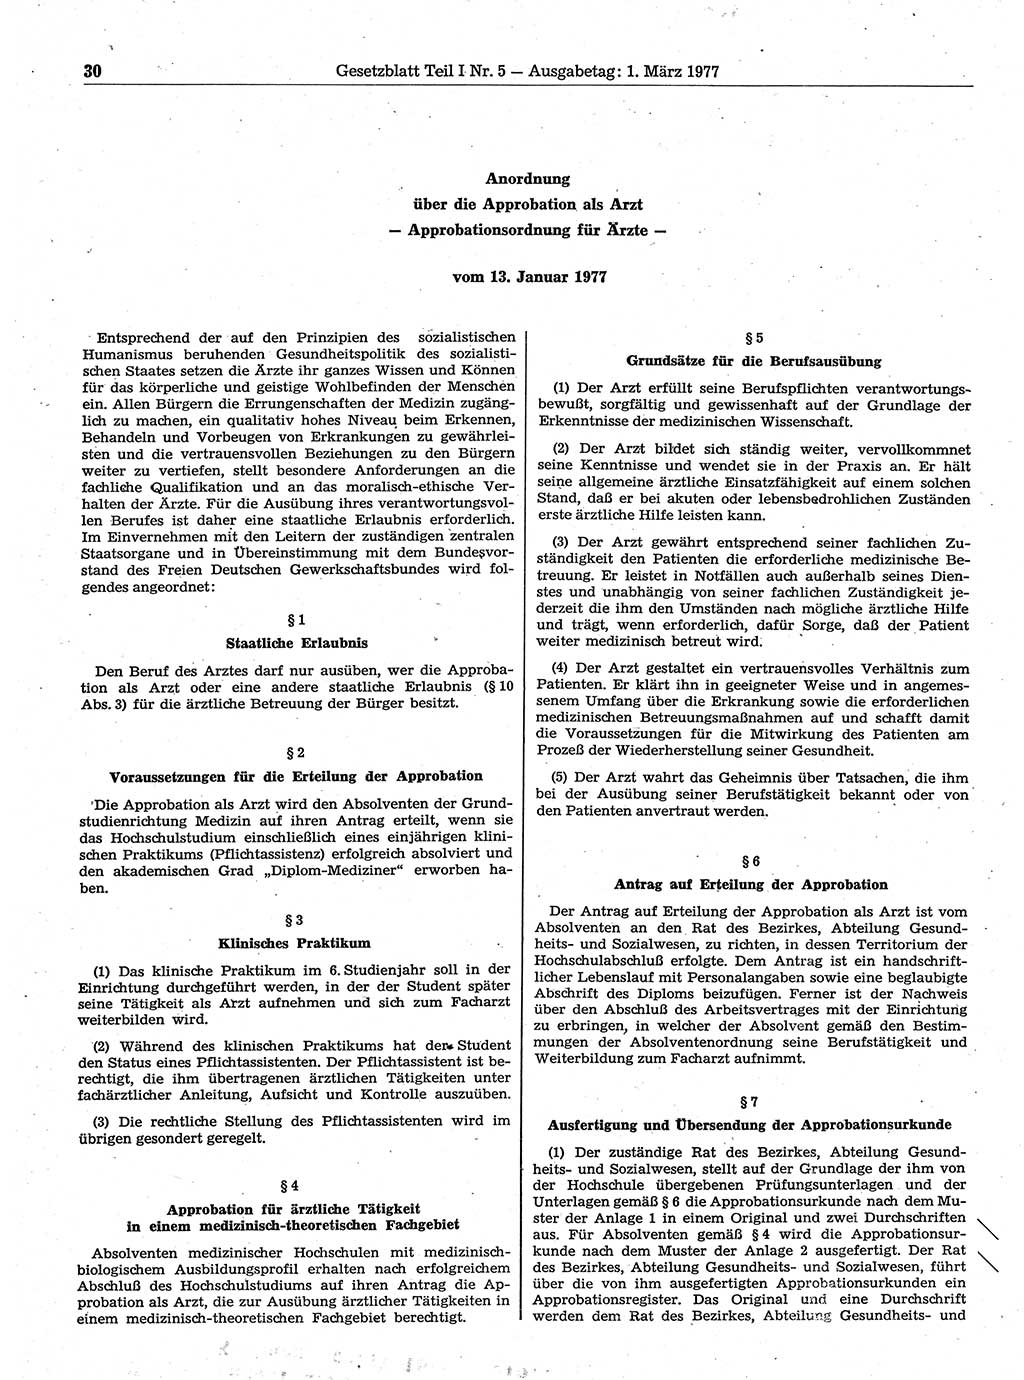 Gesetzblatt (GBl.) der Deutschen Demokratischen Republik (DDR) Teil Ⅰ 1977, Seite 30 (GBl. DDR Ⅰ 1977, S. 30)